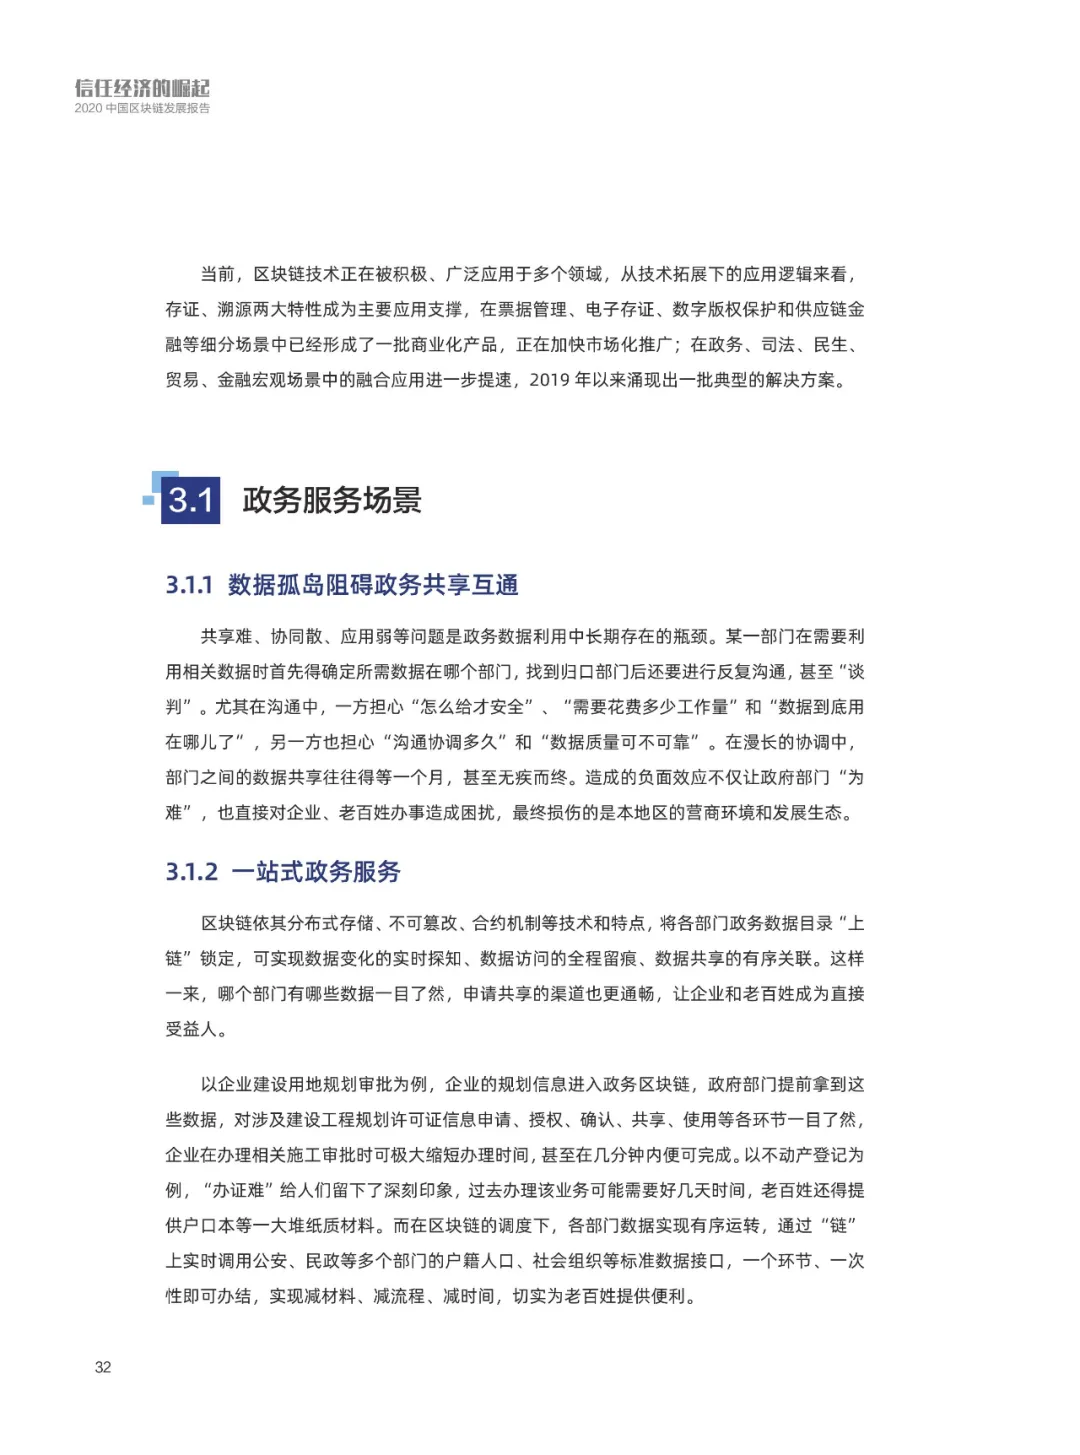 信任经济的崛起——2020中国区块链发展报告_加密算法_33